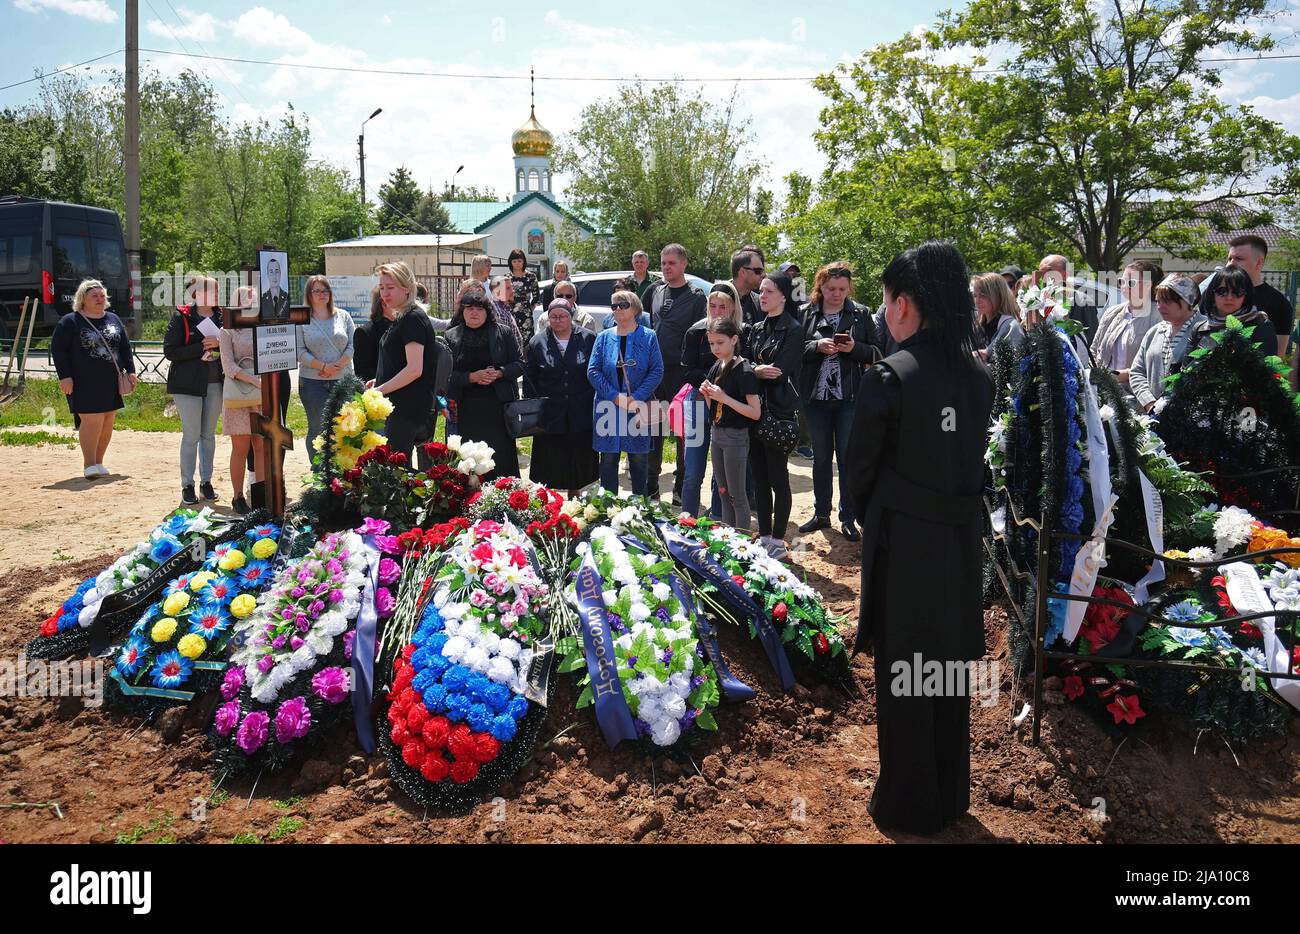 Los que están de luto asisten a un funeral del sapper del ejército ruso Danil Dumenko, que fue asesinado durante el conflicto militar en Ucrania, en un cementerio en Volzhsky, Rusia, el 26 de mayo de 2022. FOTÓGRAFO REUTERS/REUTERS Foto de stock